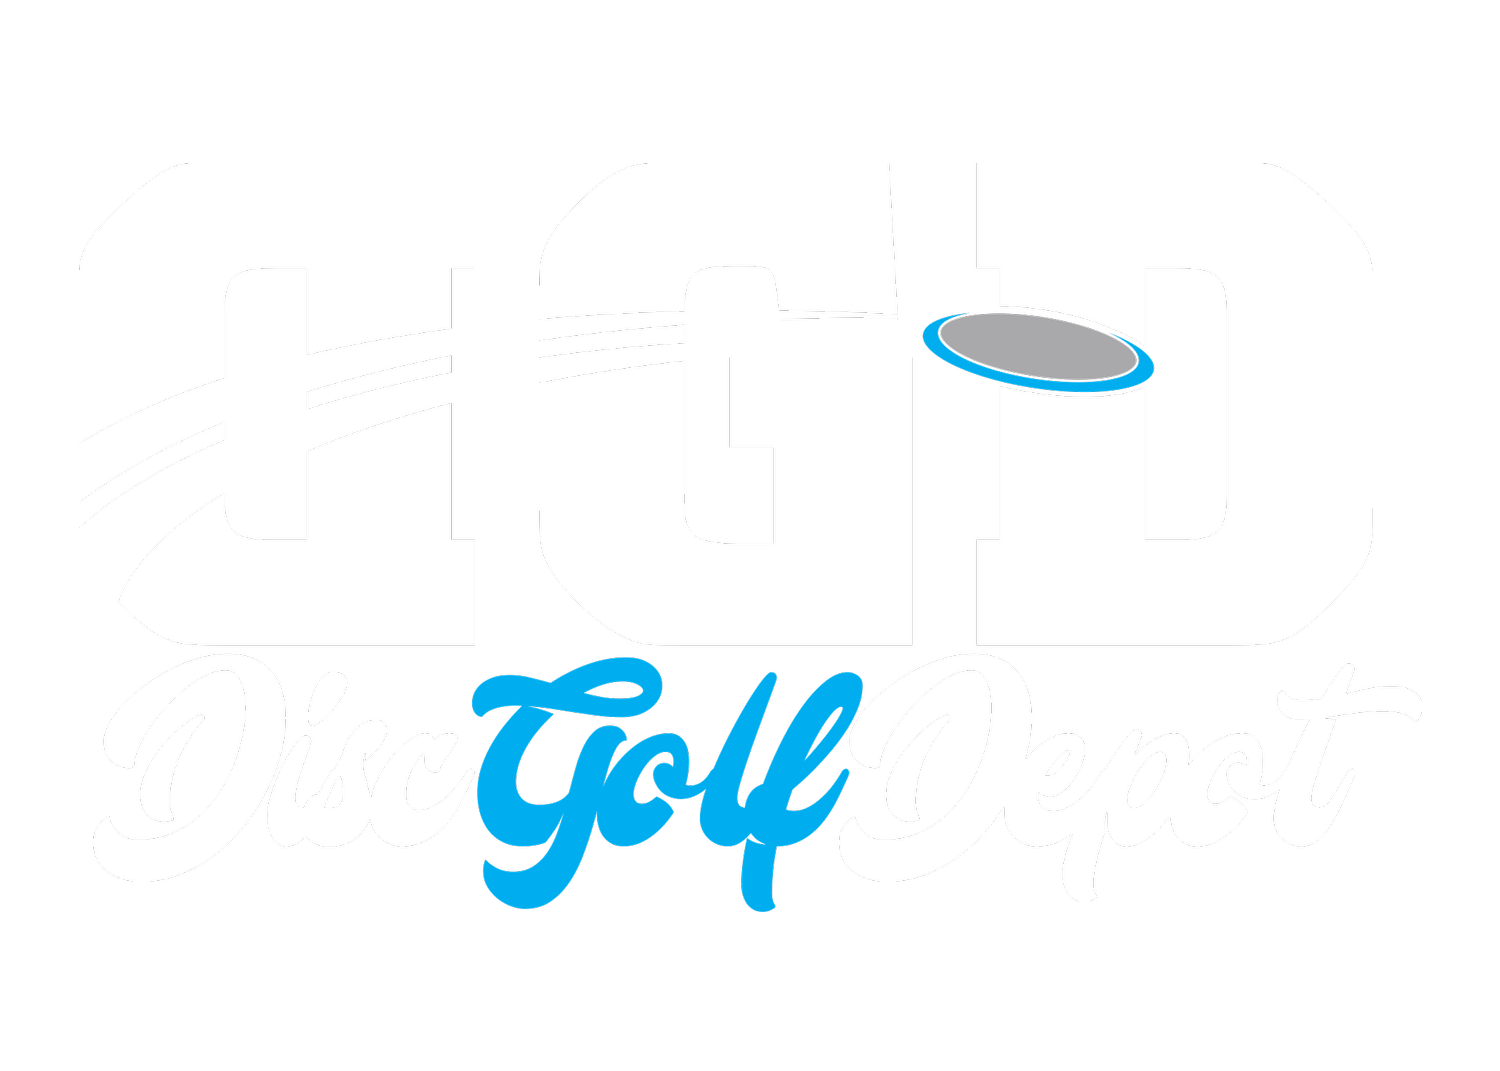 Disc Golf Depot